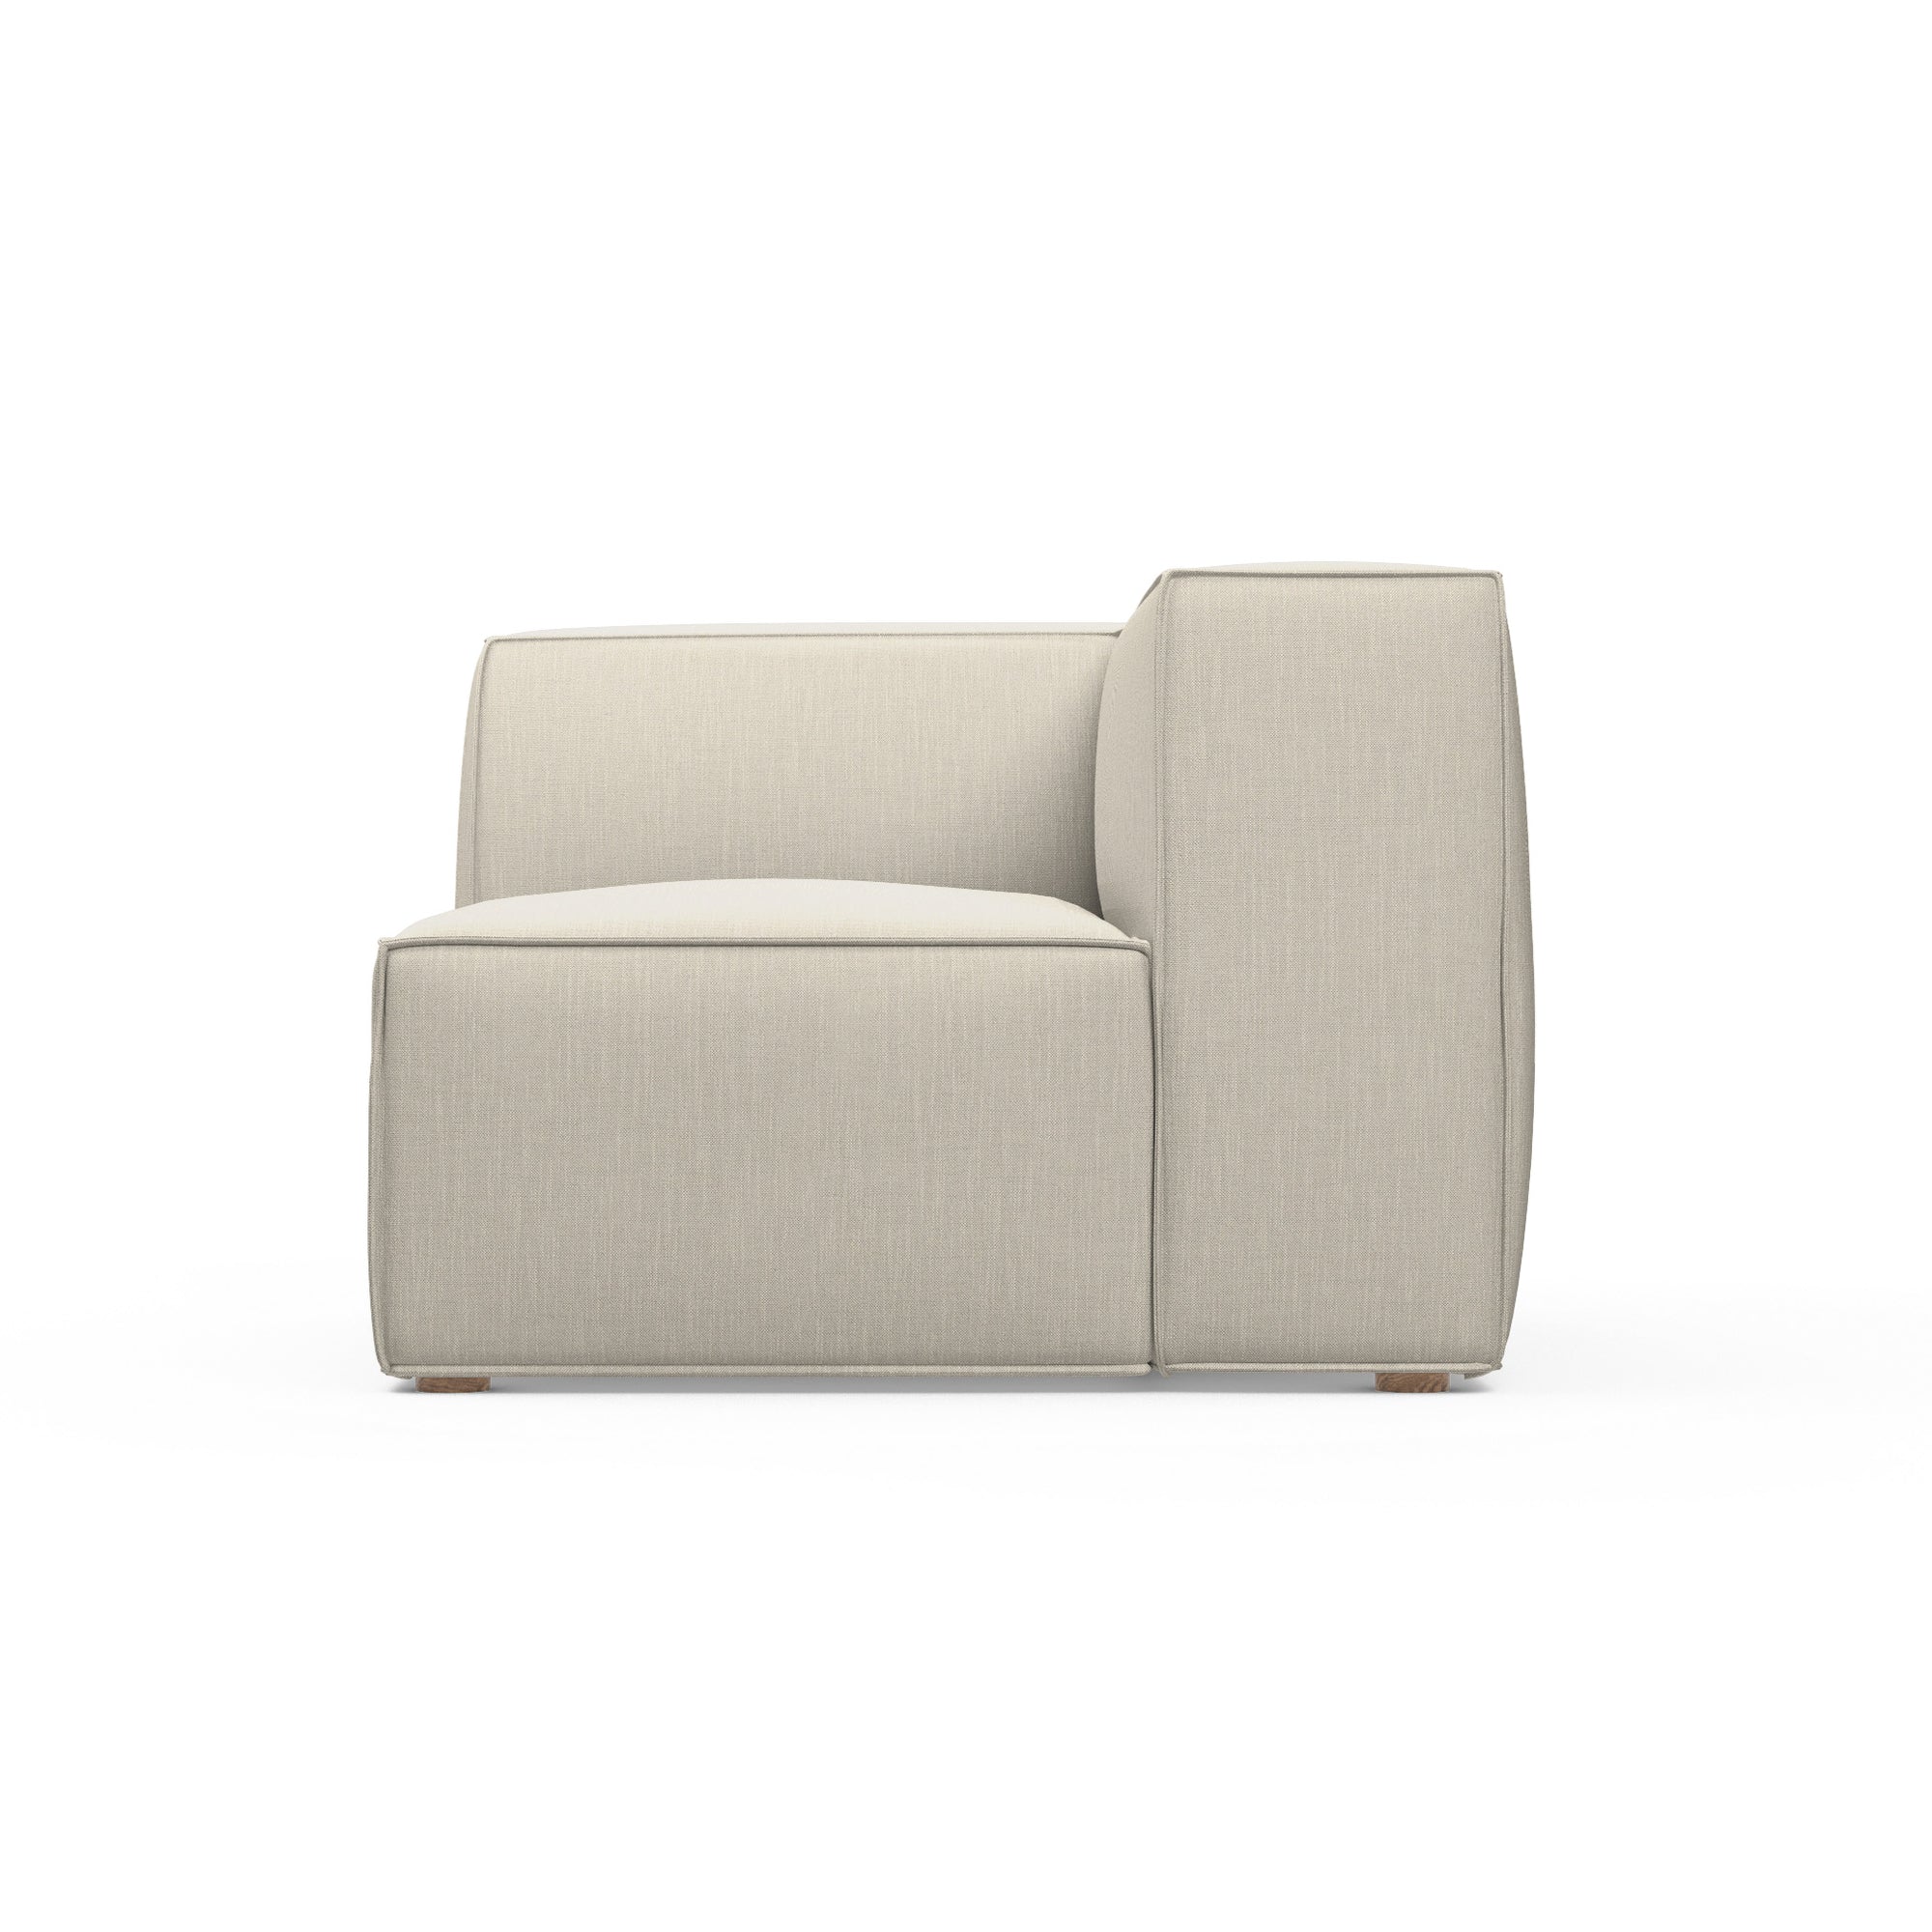 Varick Corner Chair - Oyster Box Weave Linen